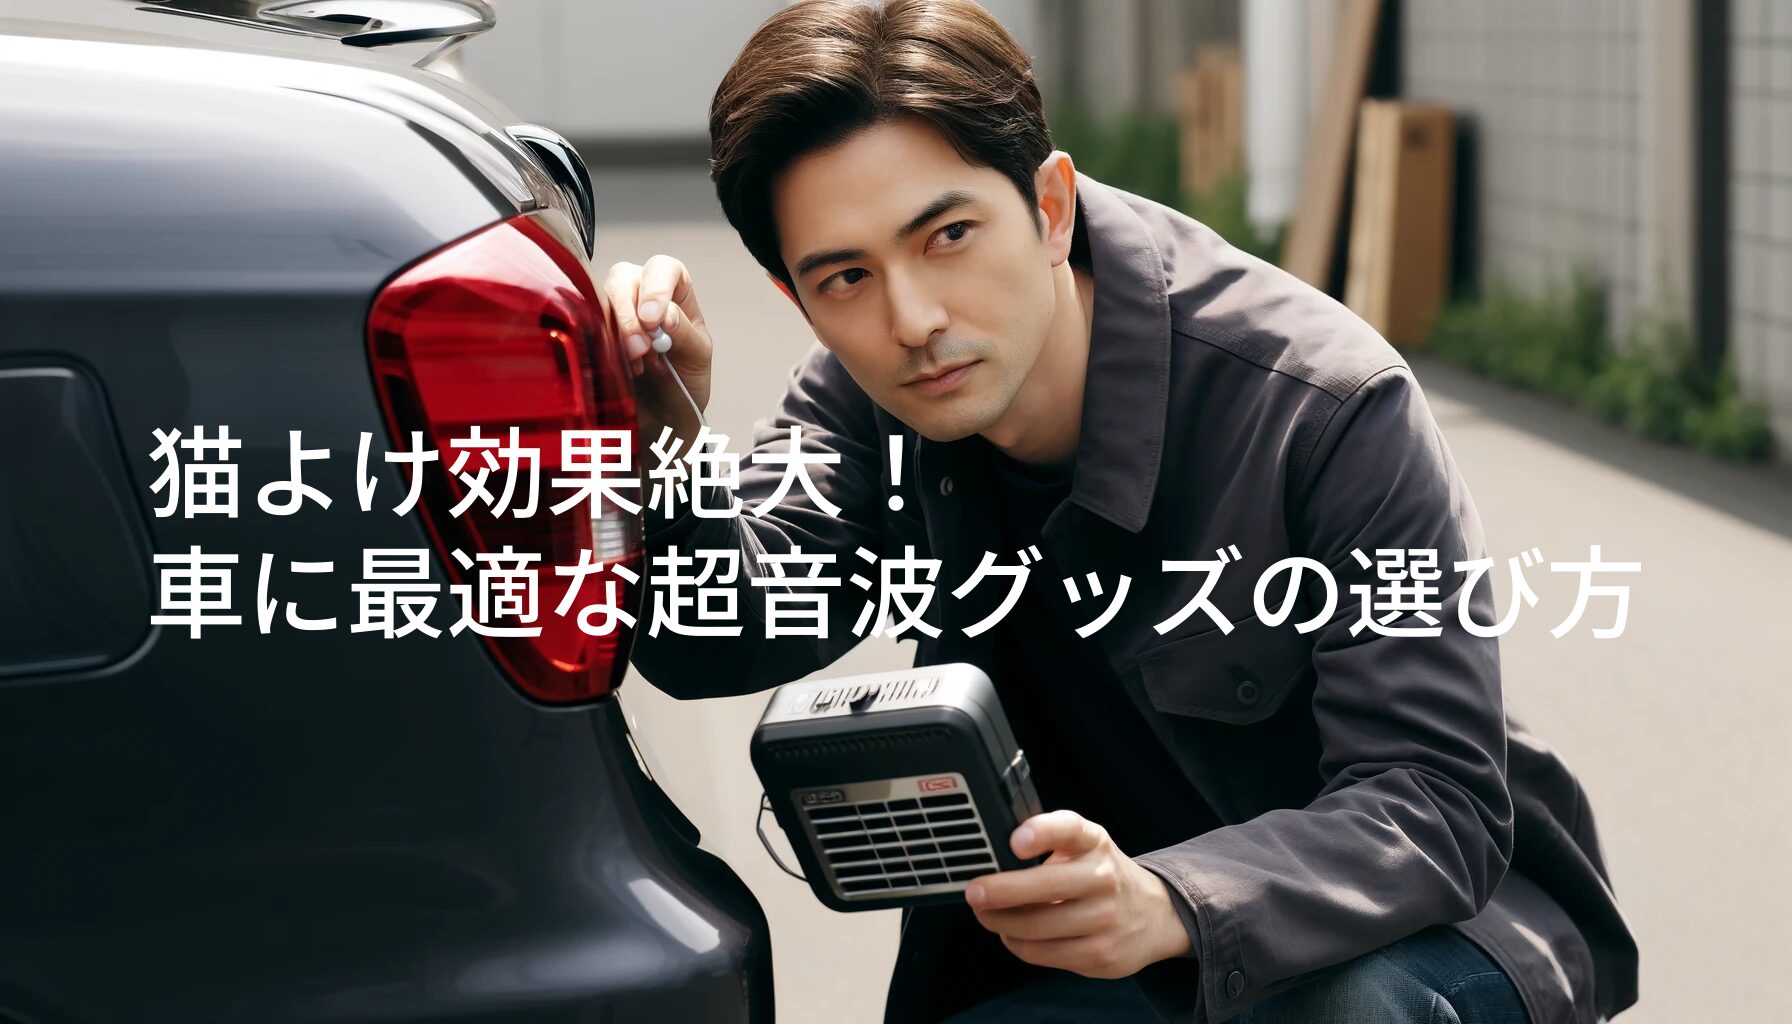 猫よけ超音波装置を車のそばに設置している40代の日本人男性。男性は短く整った髪型で、暗い色のカジュアルなジャケットを着ている。近くには保護と手入れを象徴するスリムな車がある。